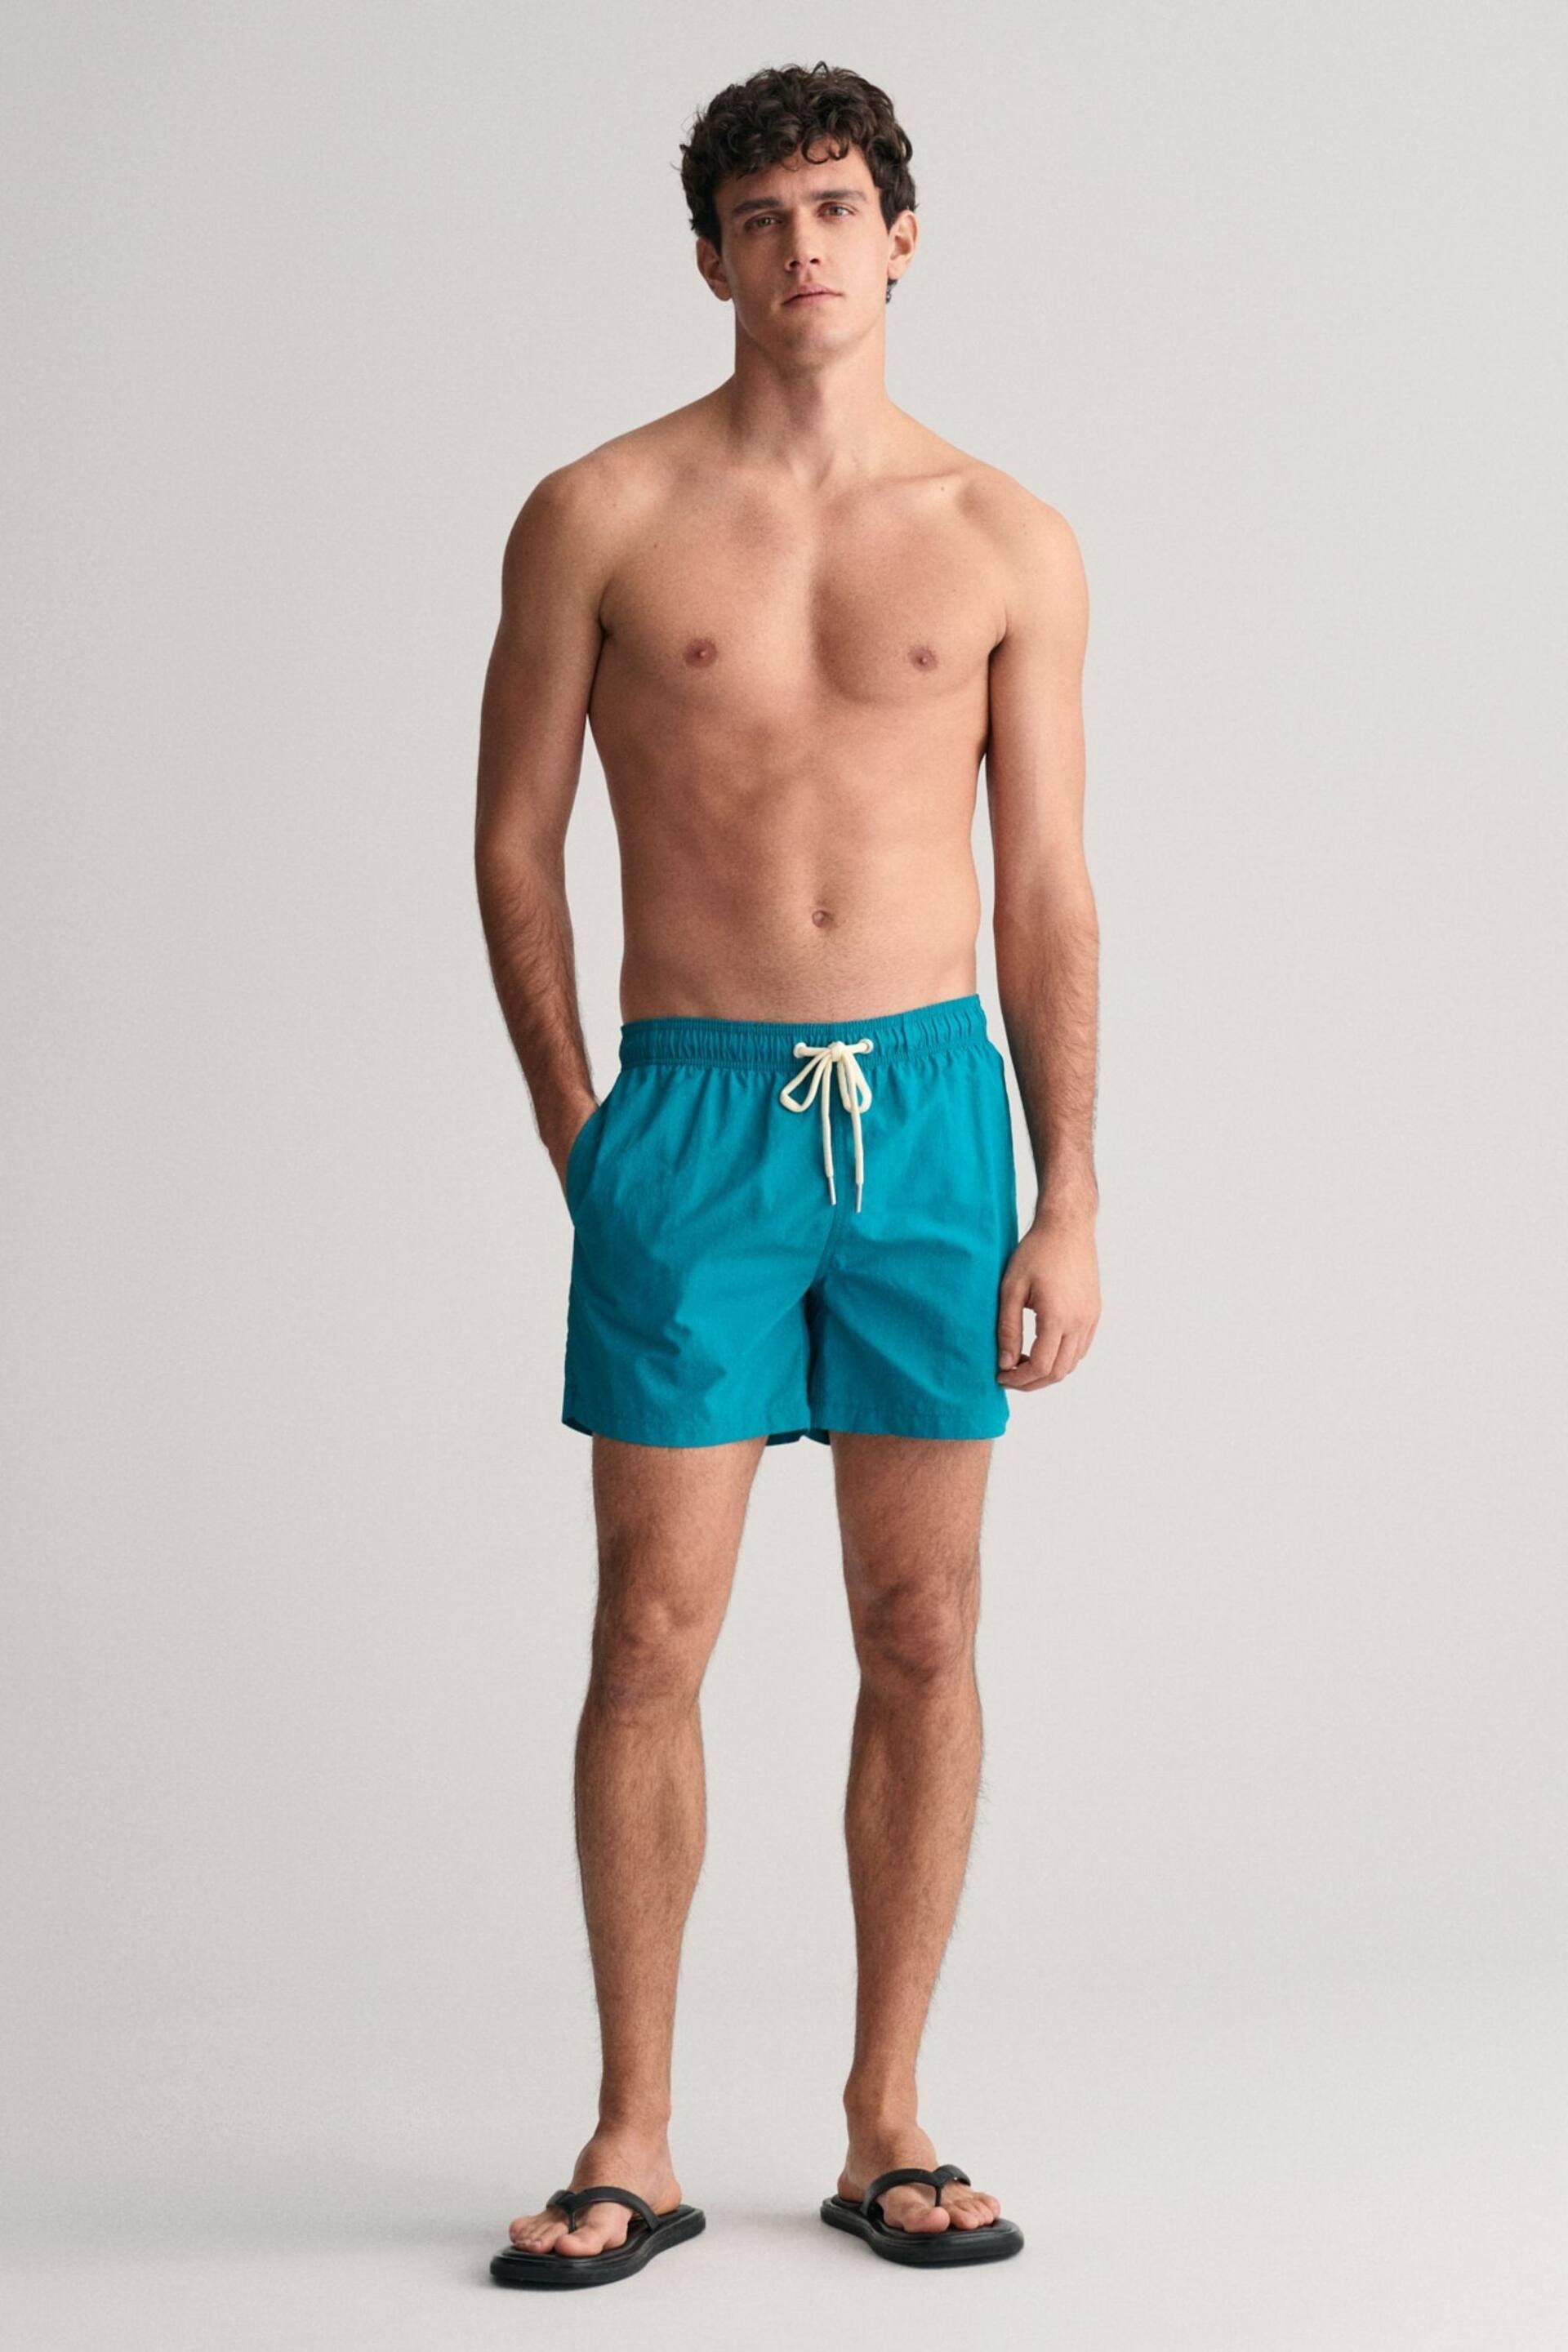 GANT Swim Shorts - Image 1 of 5